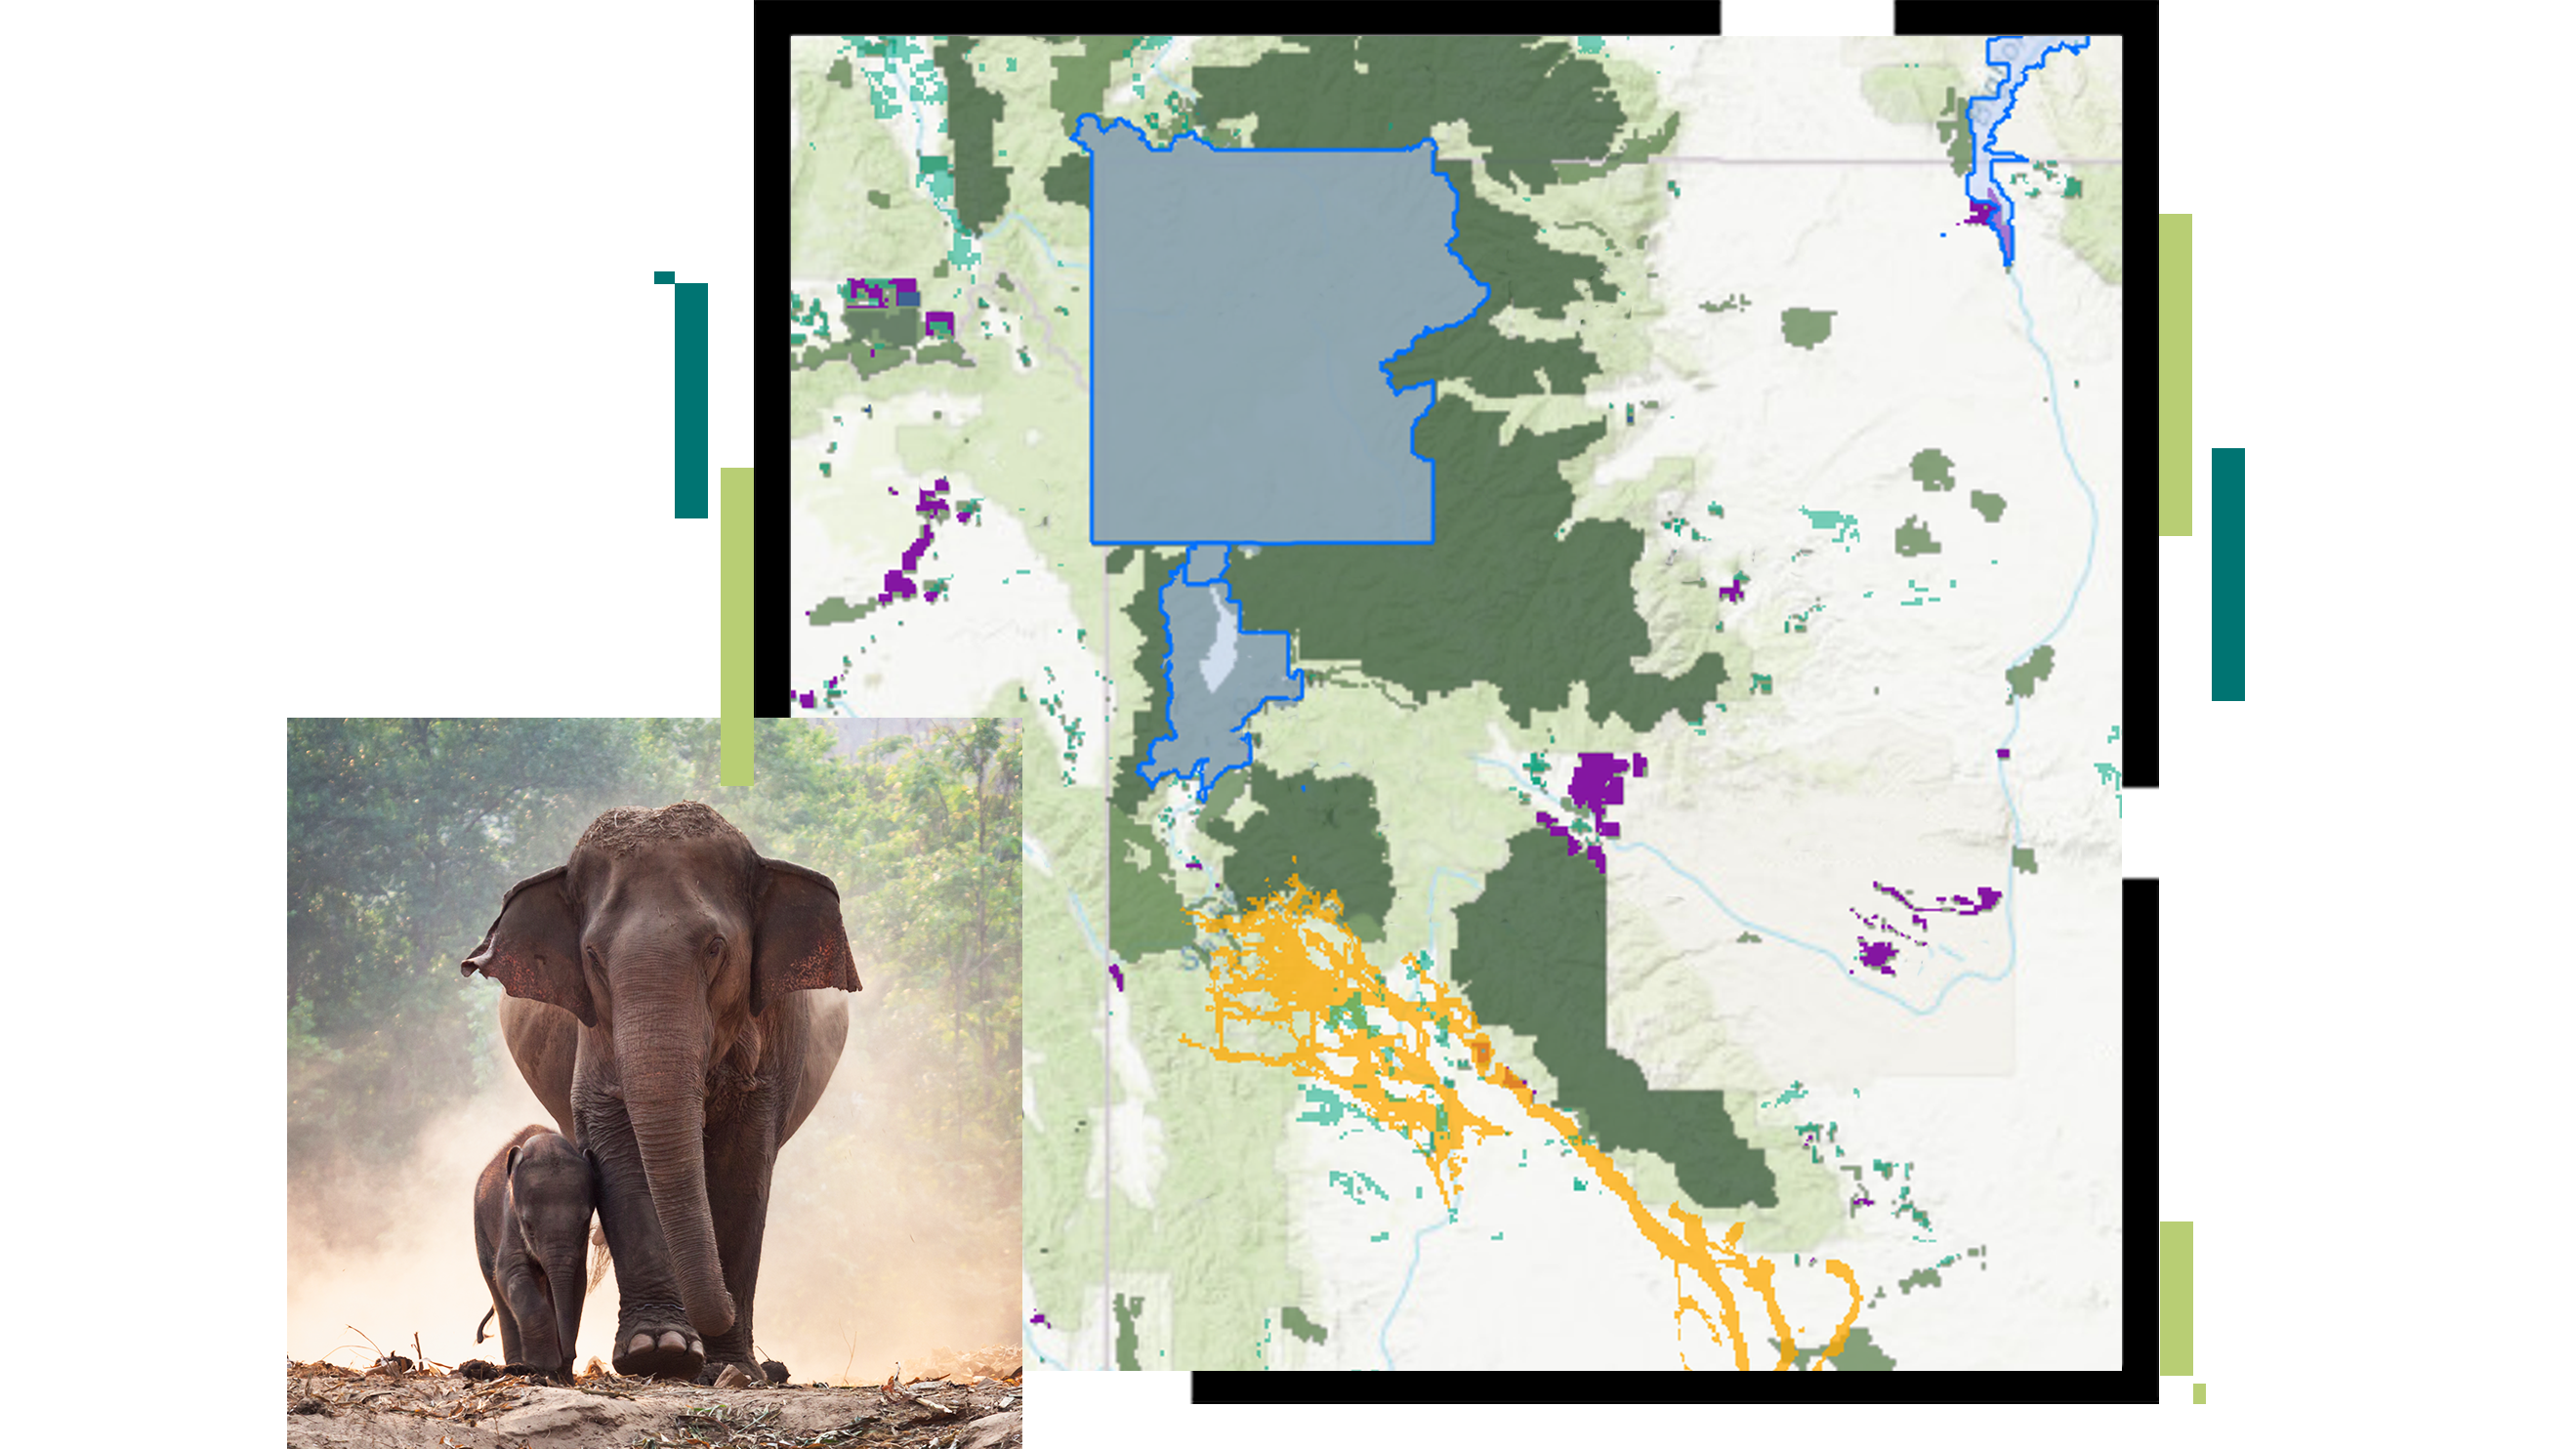 Karte eines vorgeschlagenen Schutzgebiets mit blauem Umriss, überlagert von dem Bild eines Elefanten und seines Kalbs